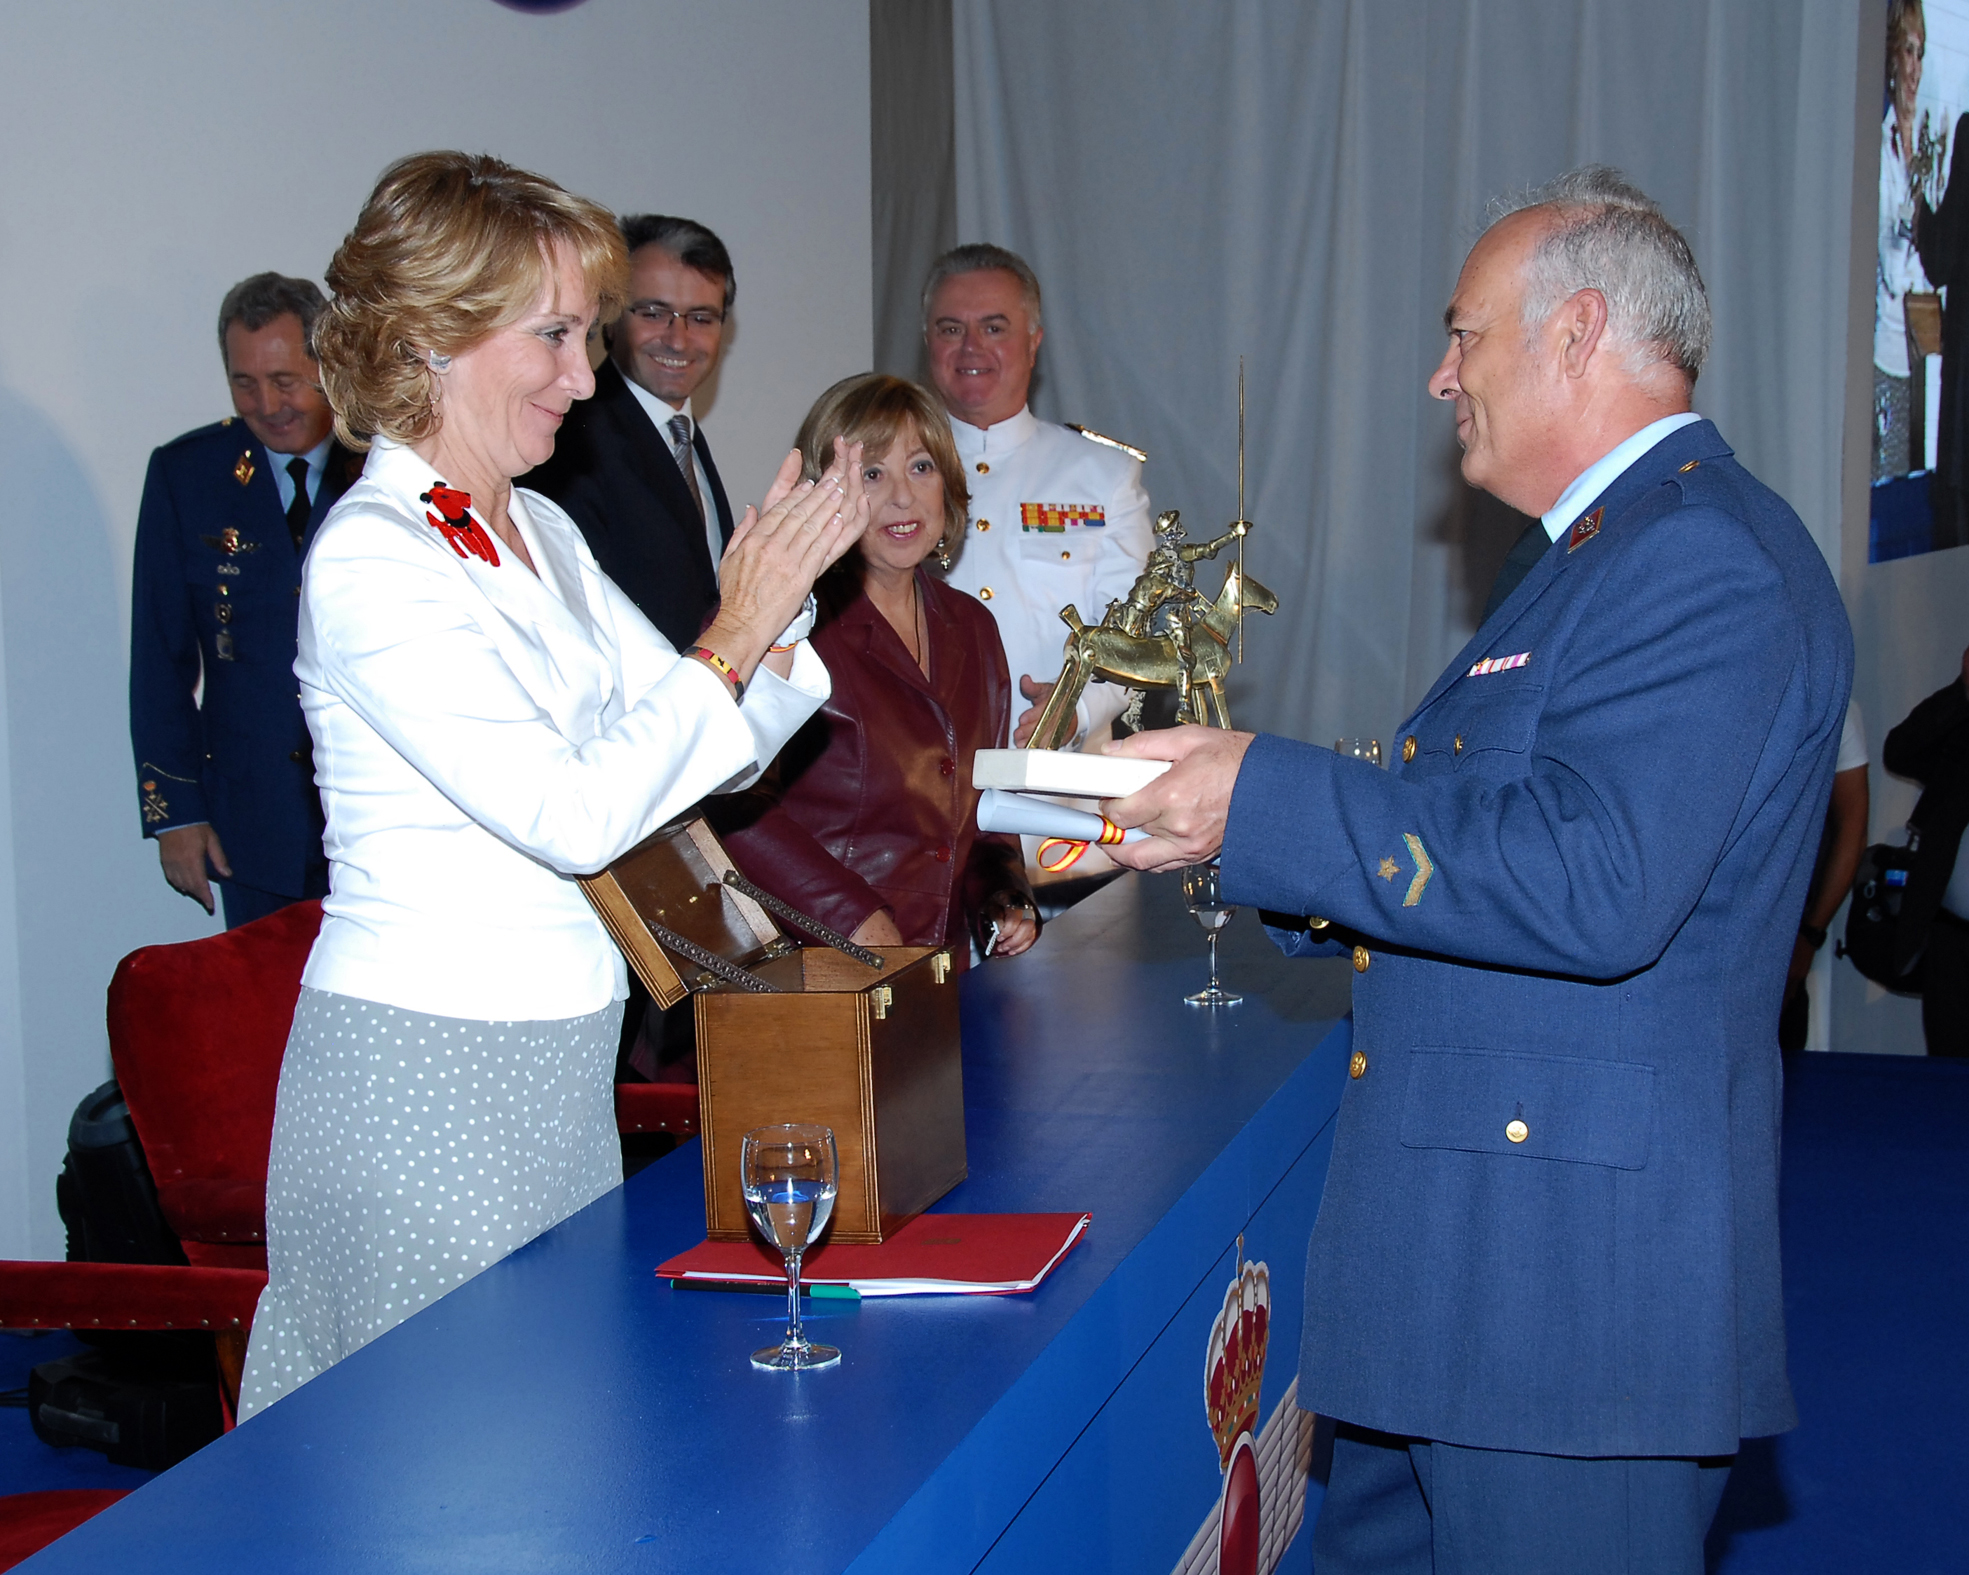 La presidenta de la Comunidad de Madrid entrega uno de los premios